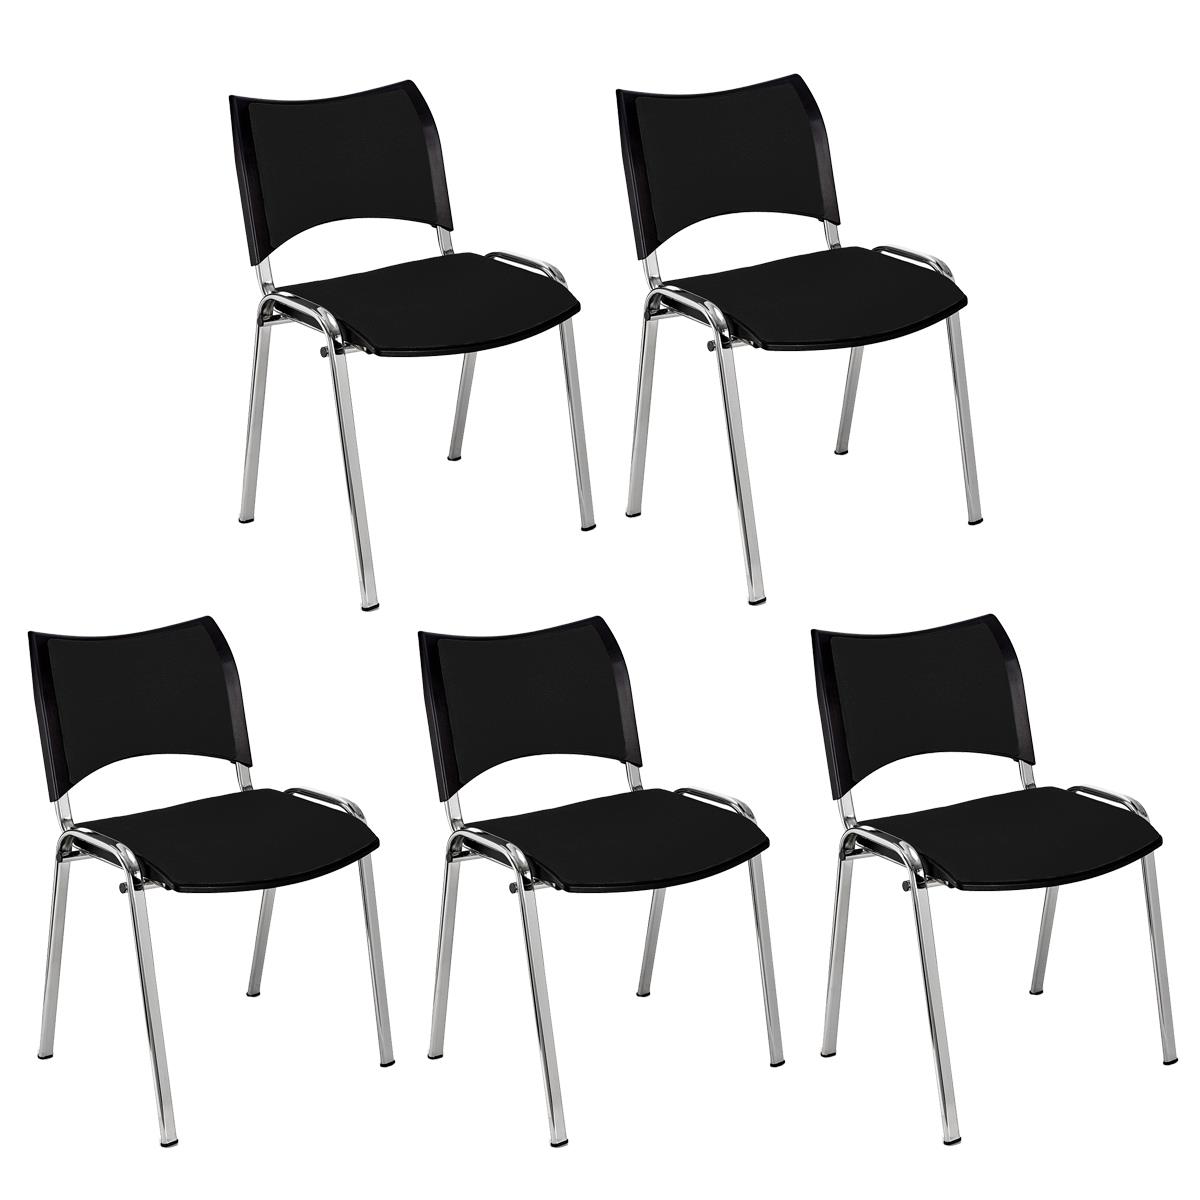 Lote 5 Cadeiras de Visita ROMEL, Prática e Empilhável, Pernas Cromadas, Em Pano, Preto